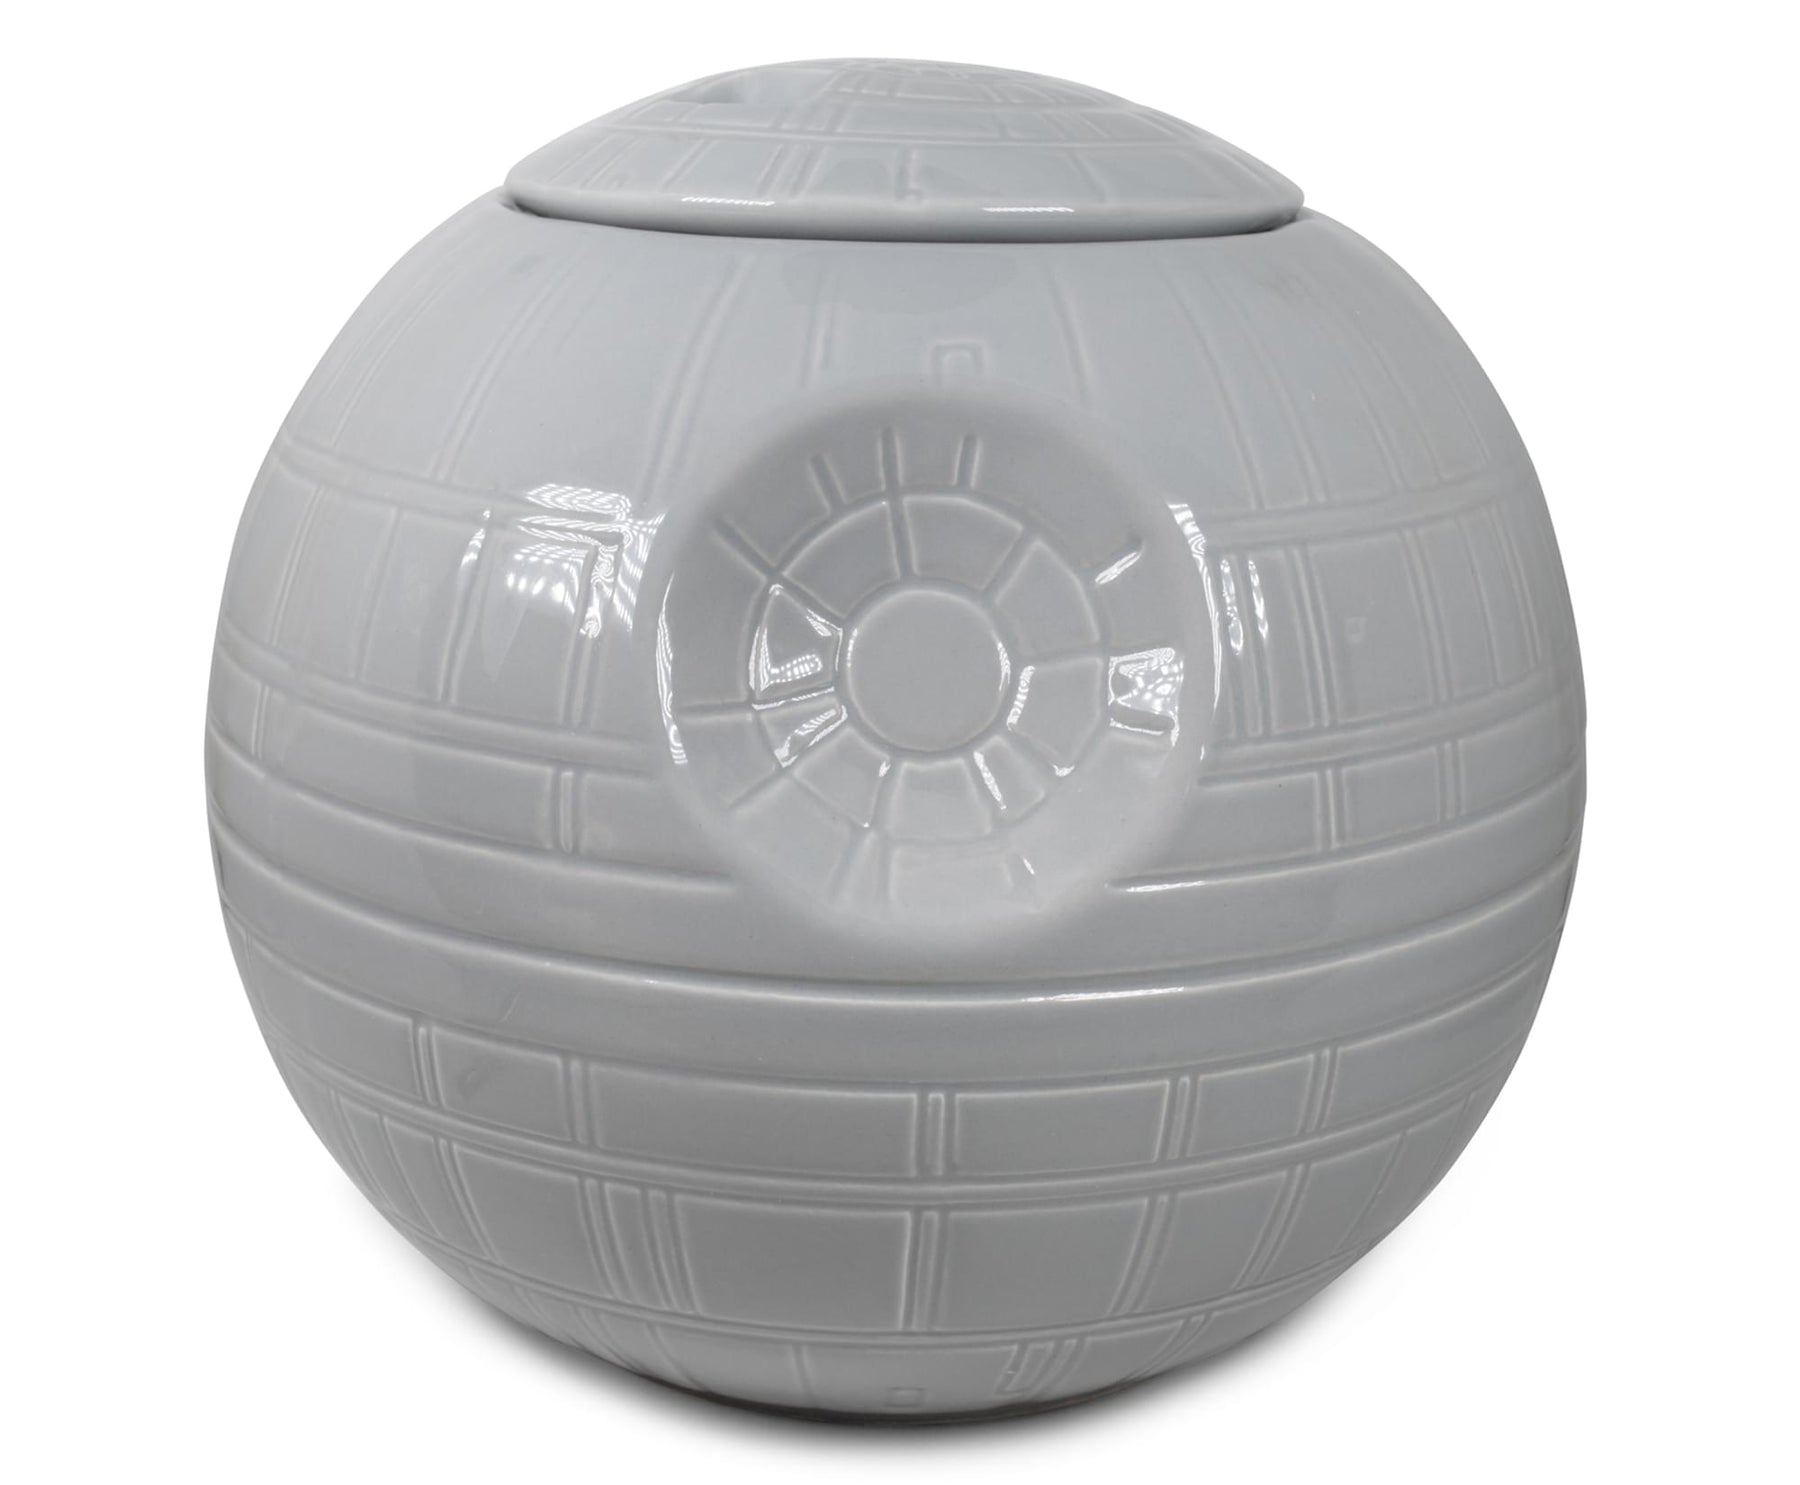 Star Wars Death Star Ceramic Figural Cookie Storage Jar